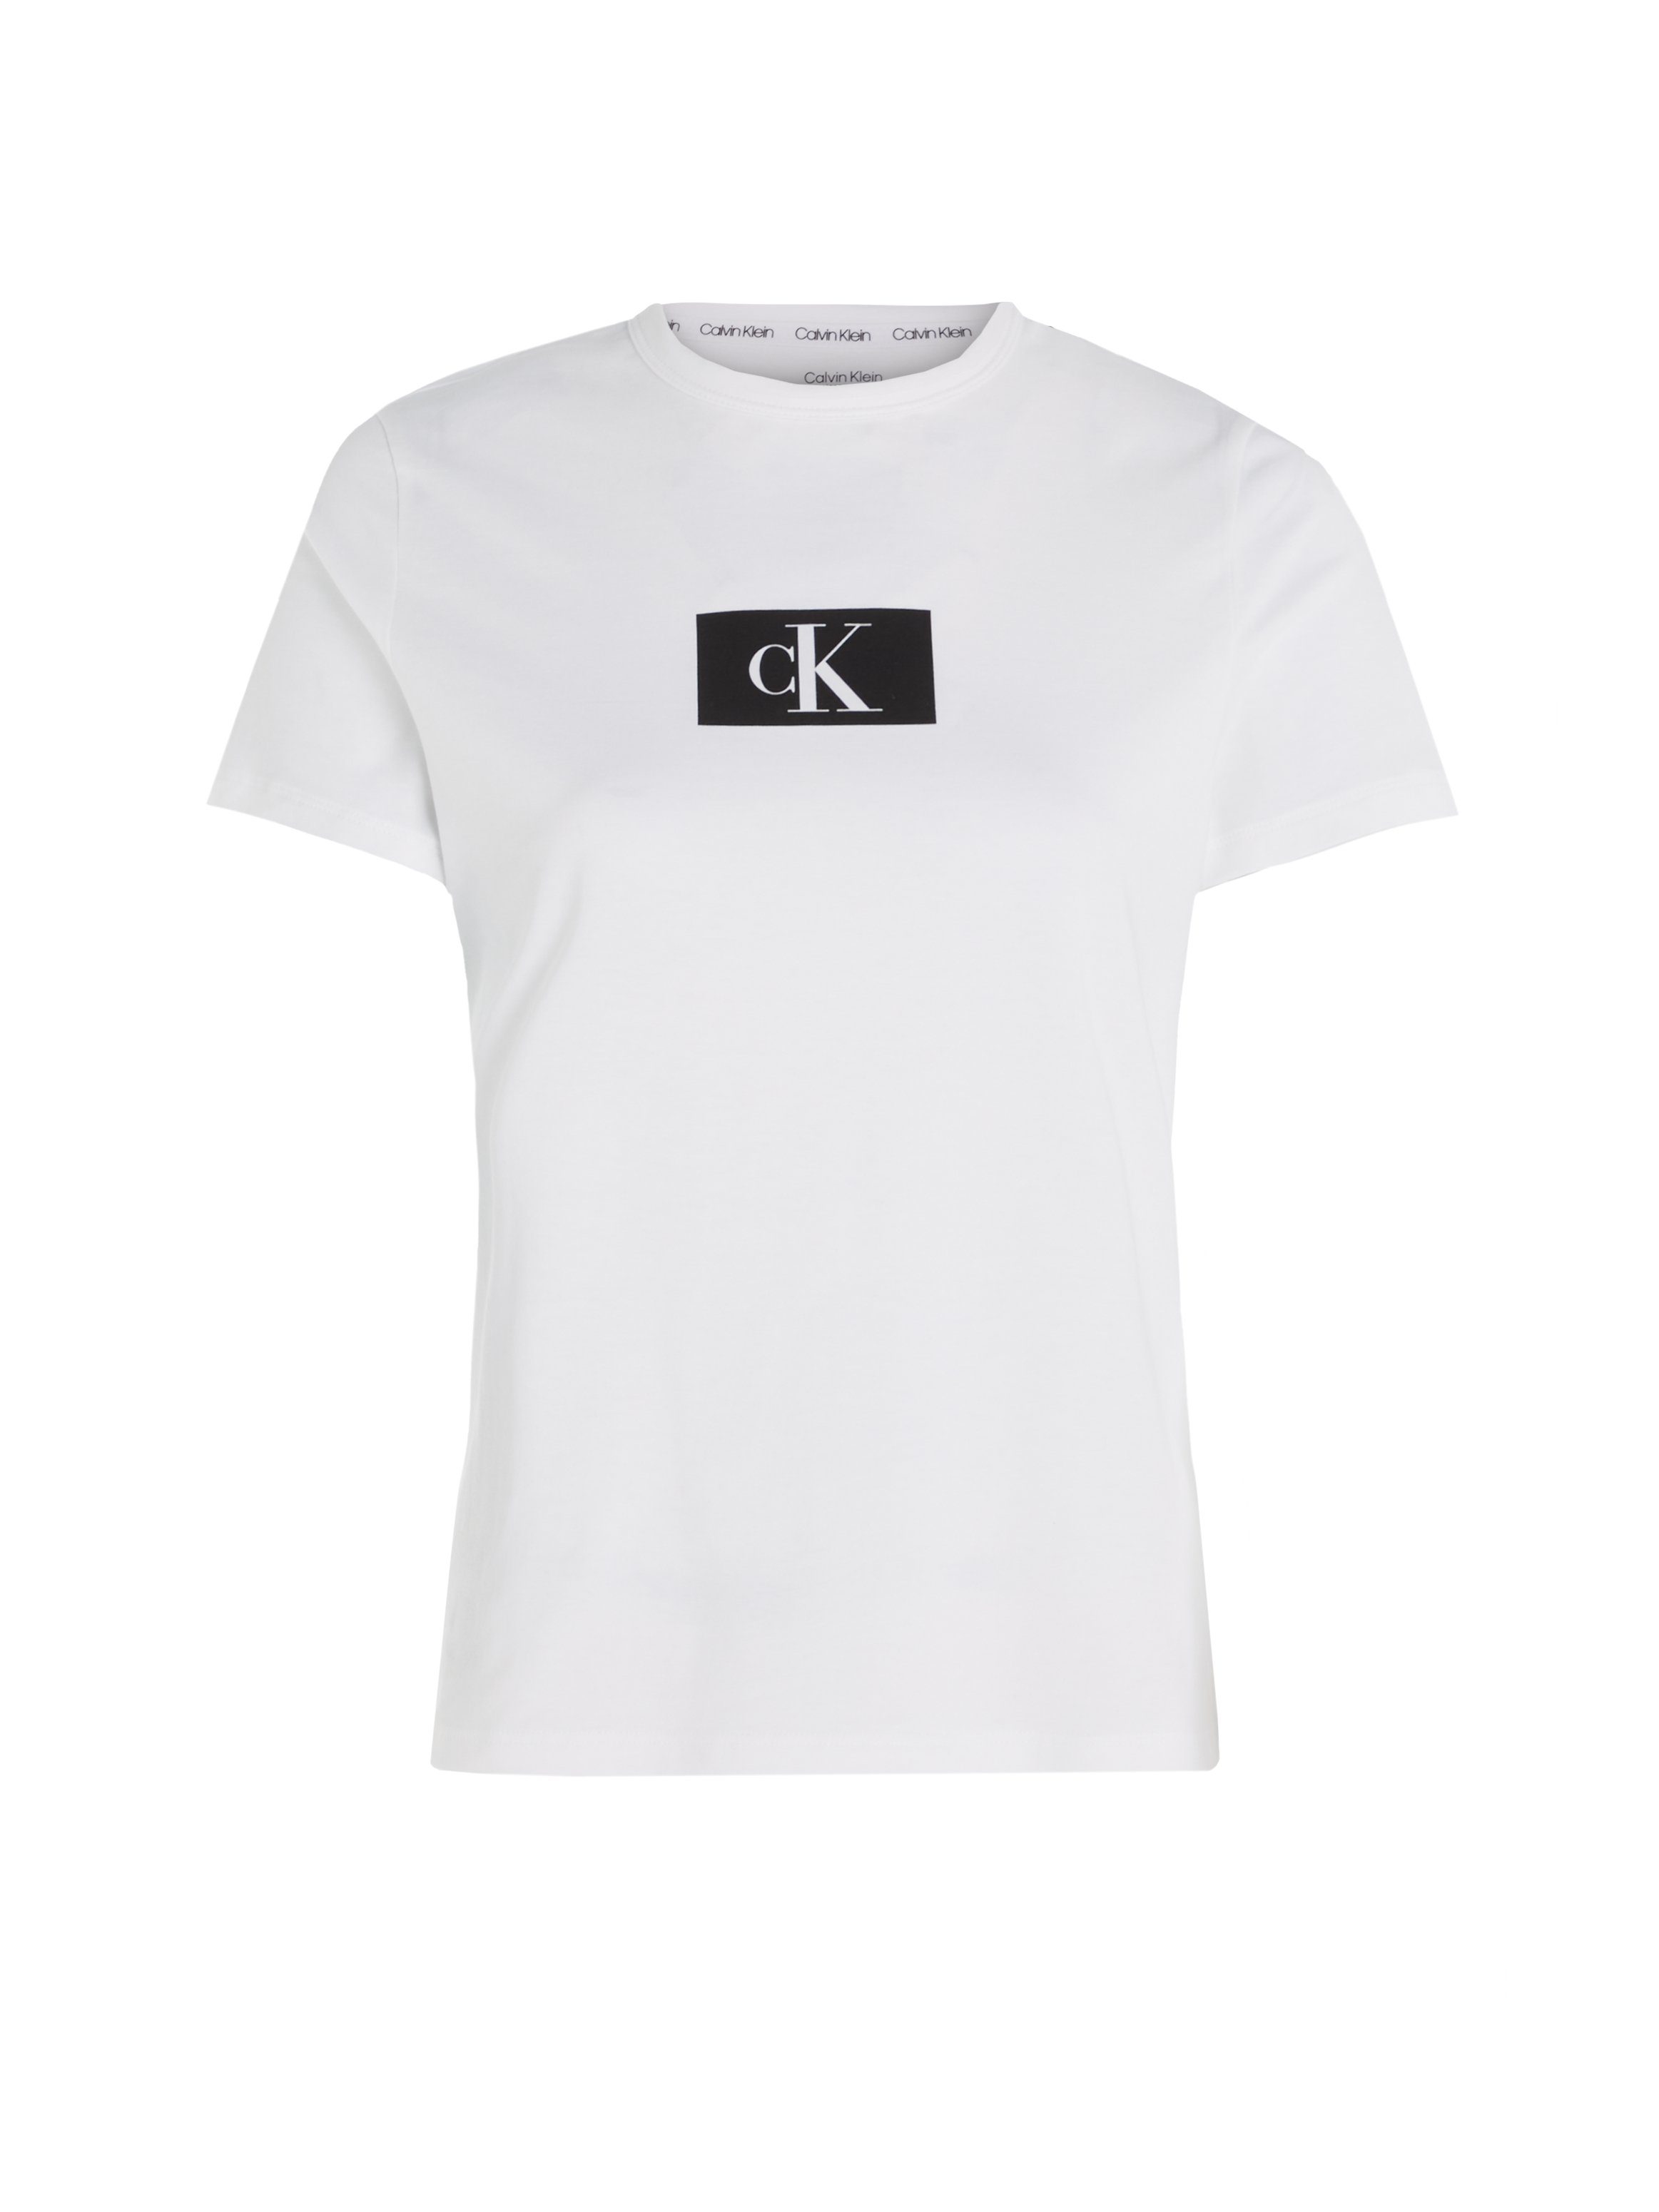 Calvin Klein Underwear WHITE Kurzarmshirt NECK CREW S/S